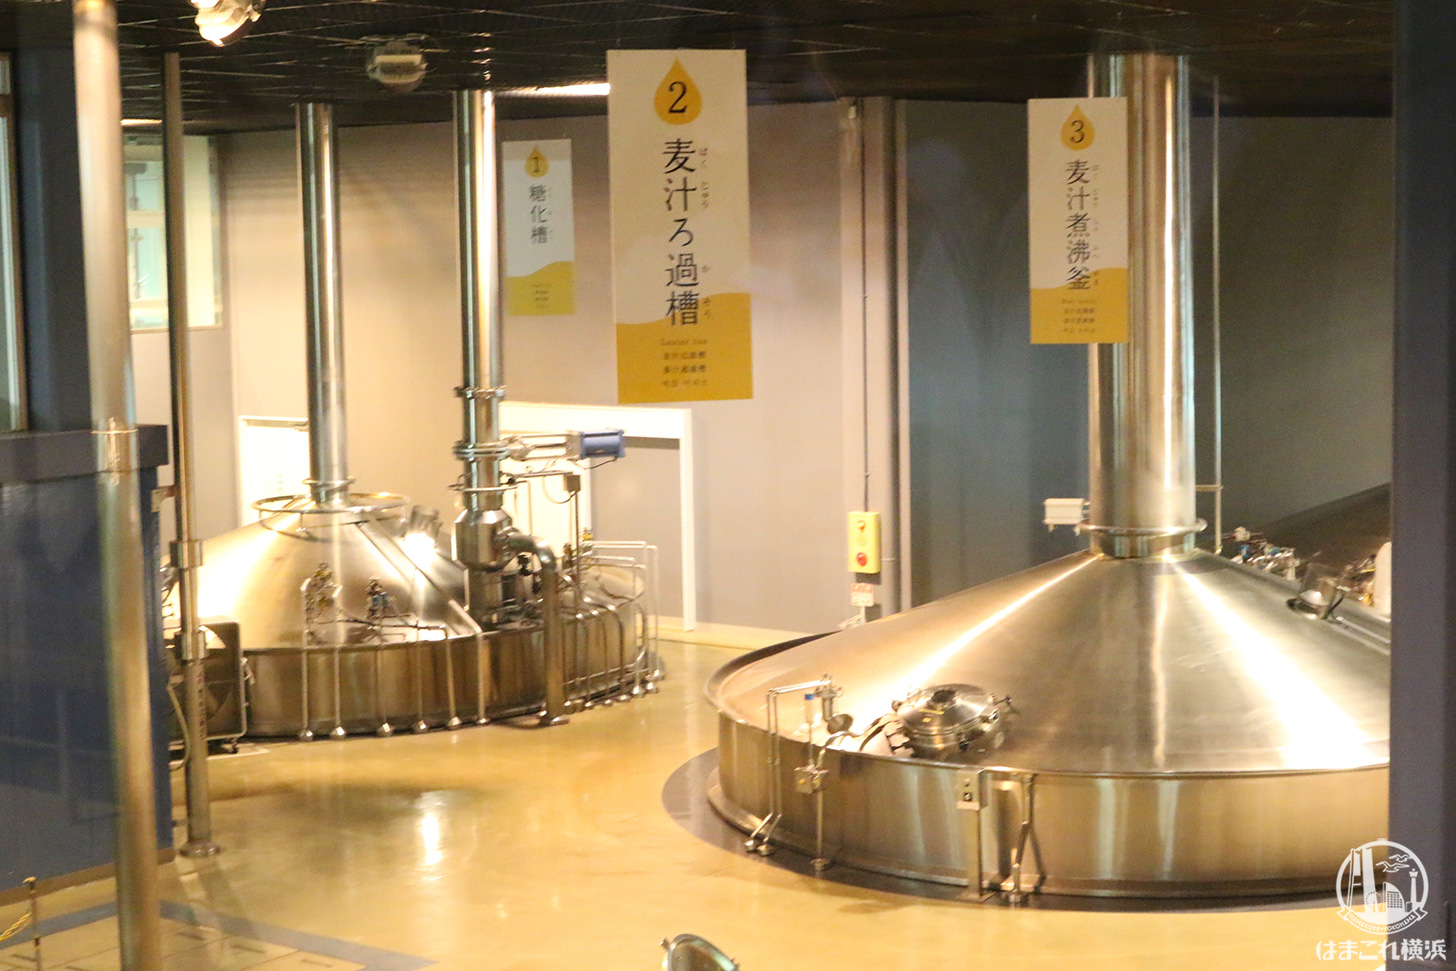 キリンビール横浜工場 | はまこれ横浜